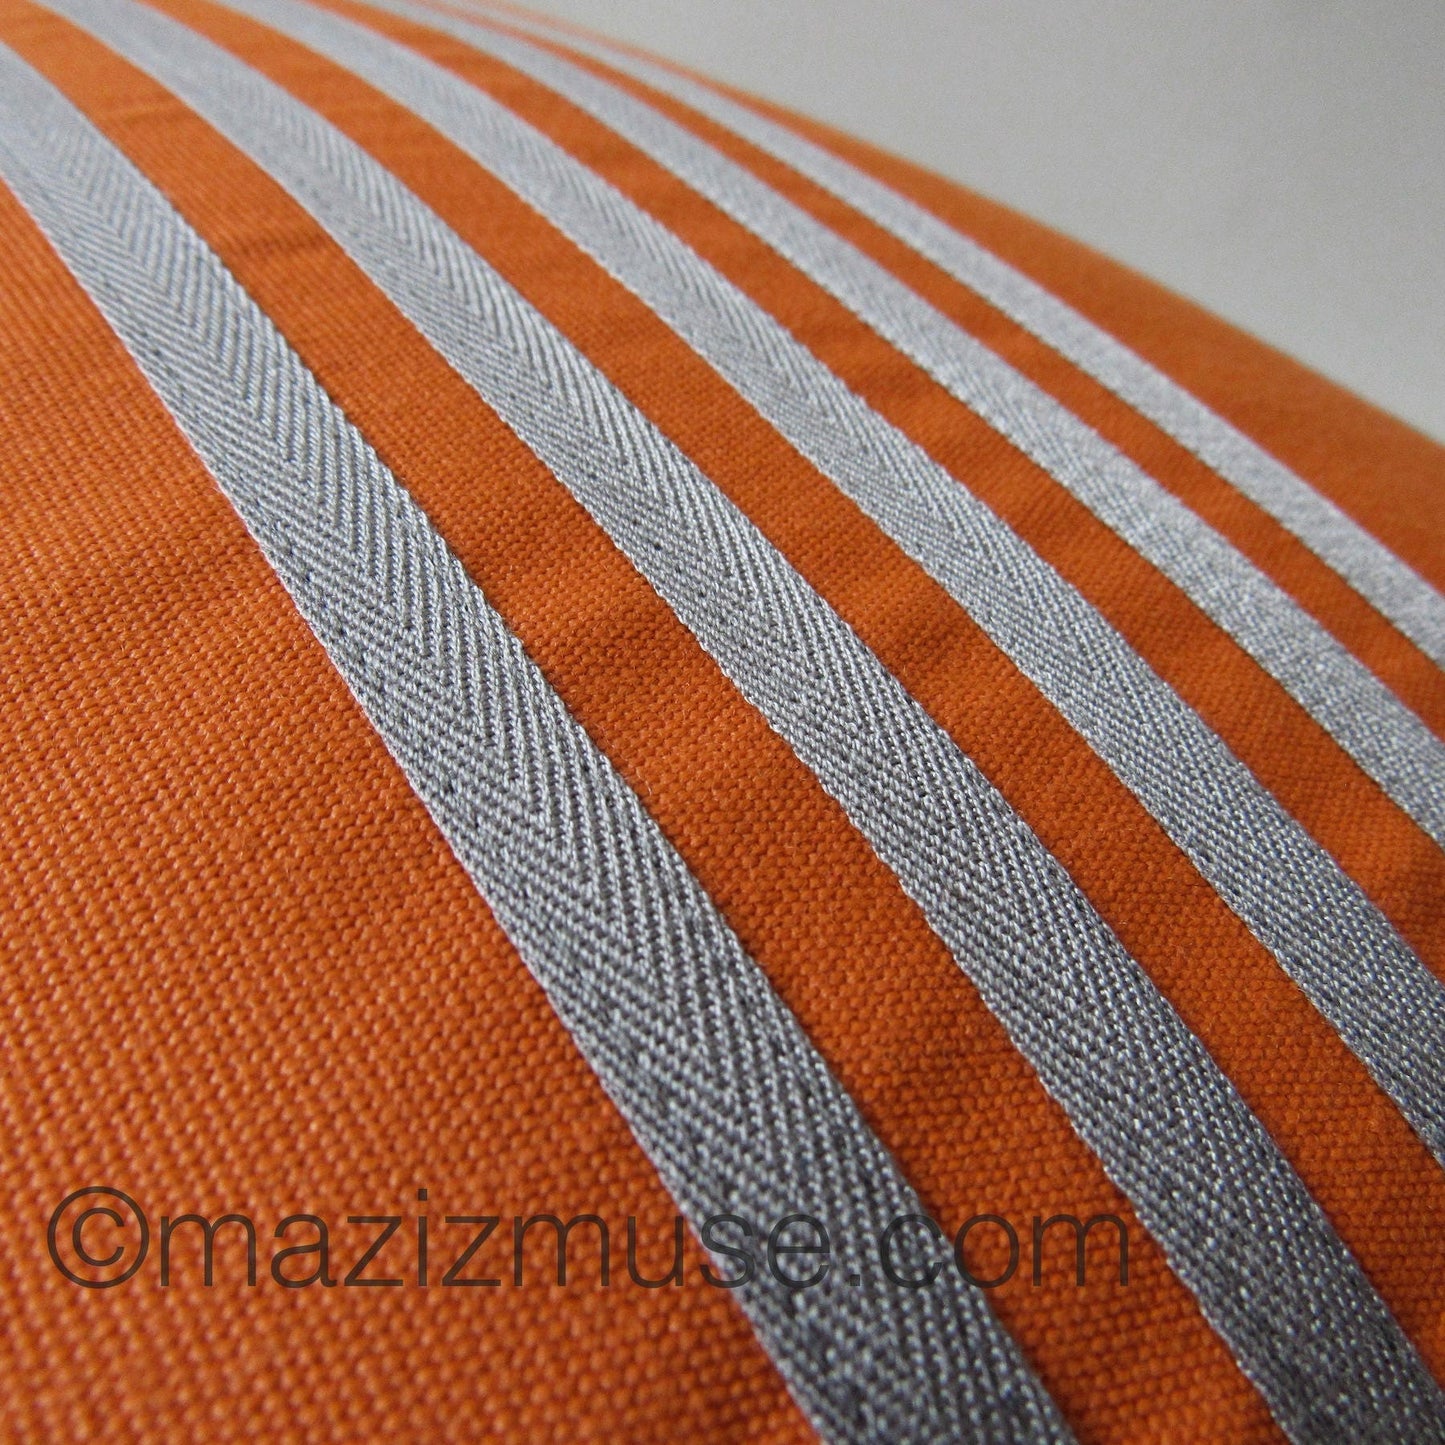 Decorative Grey & Orange Striped Sunbrella outdoor Cushion Cover